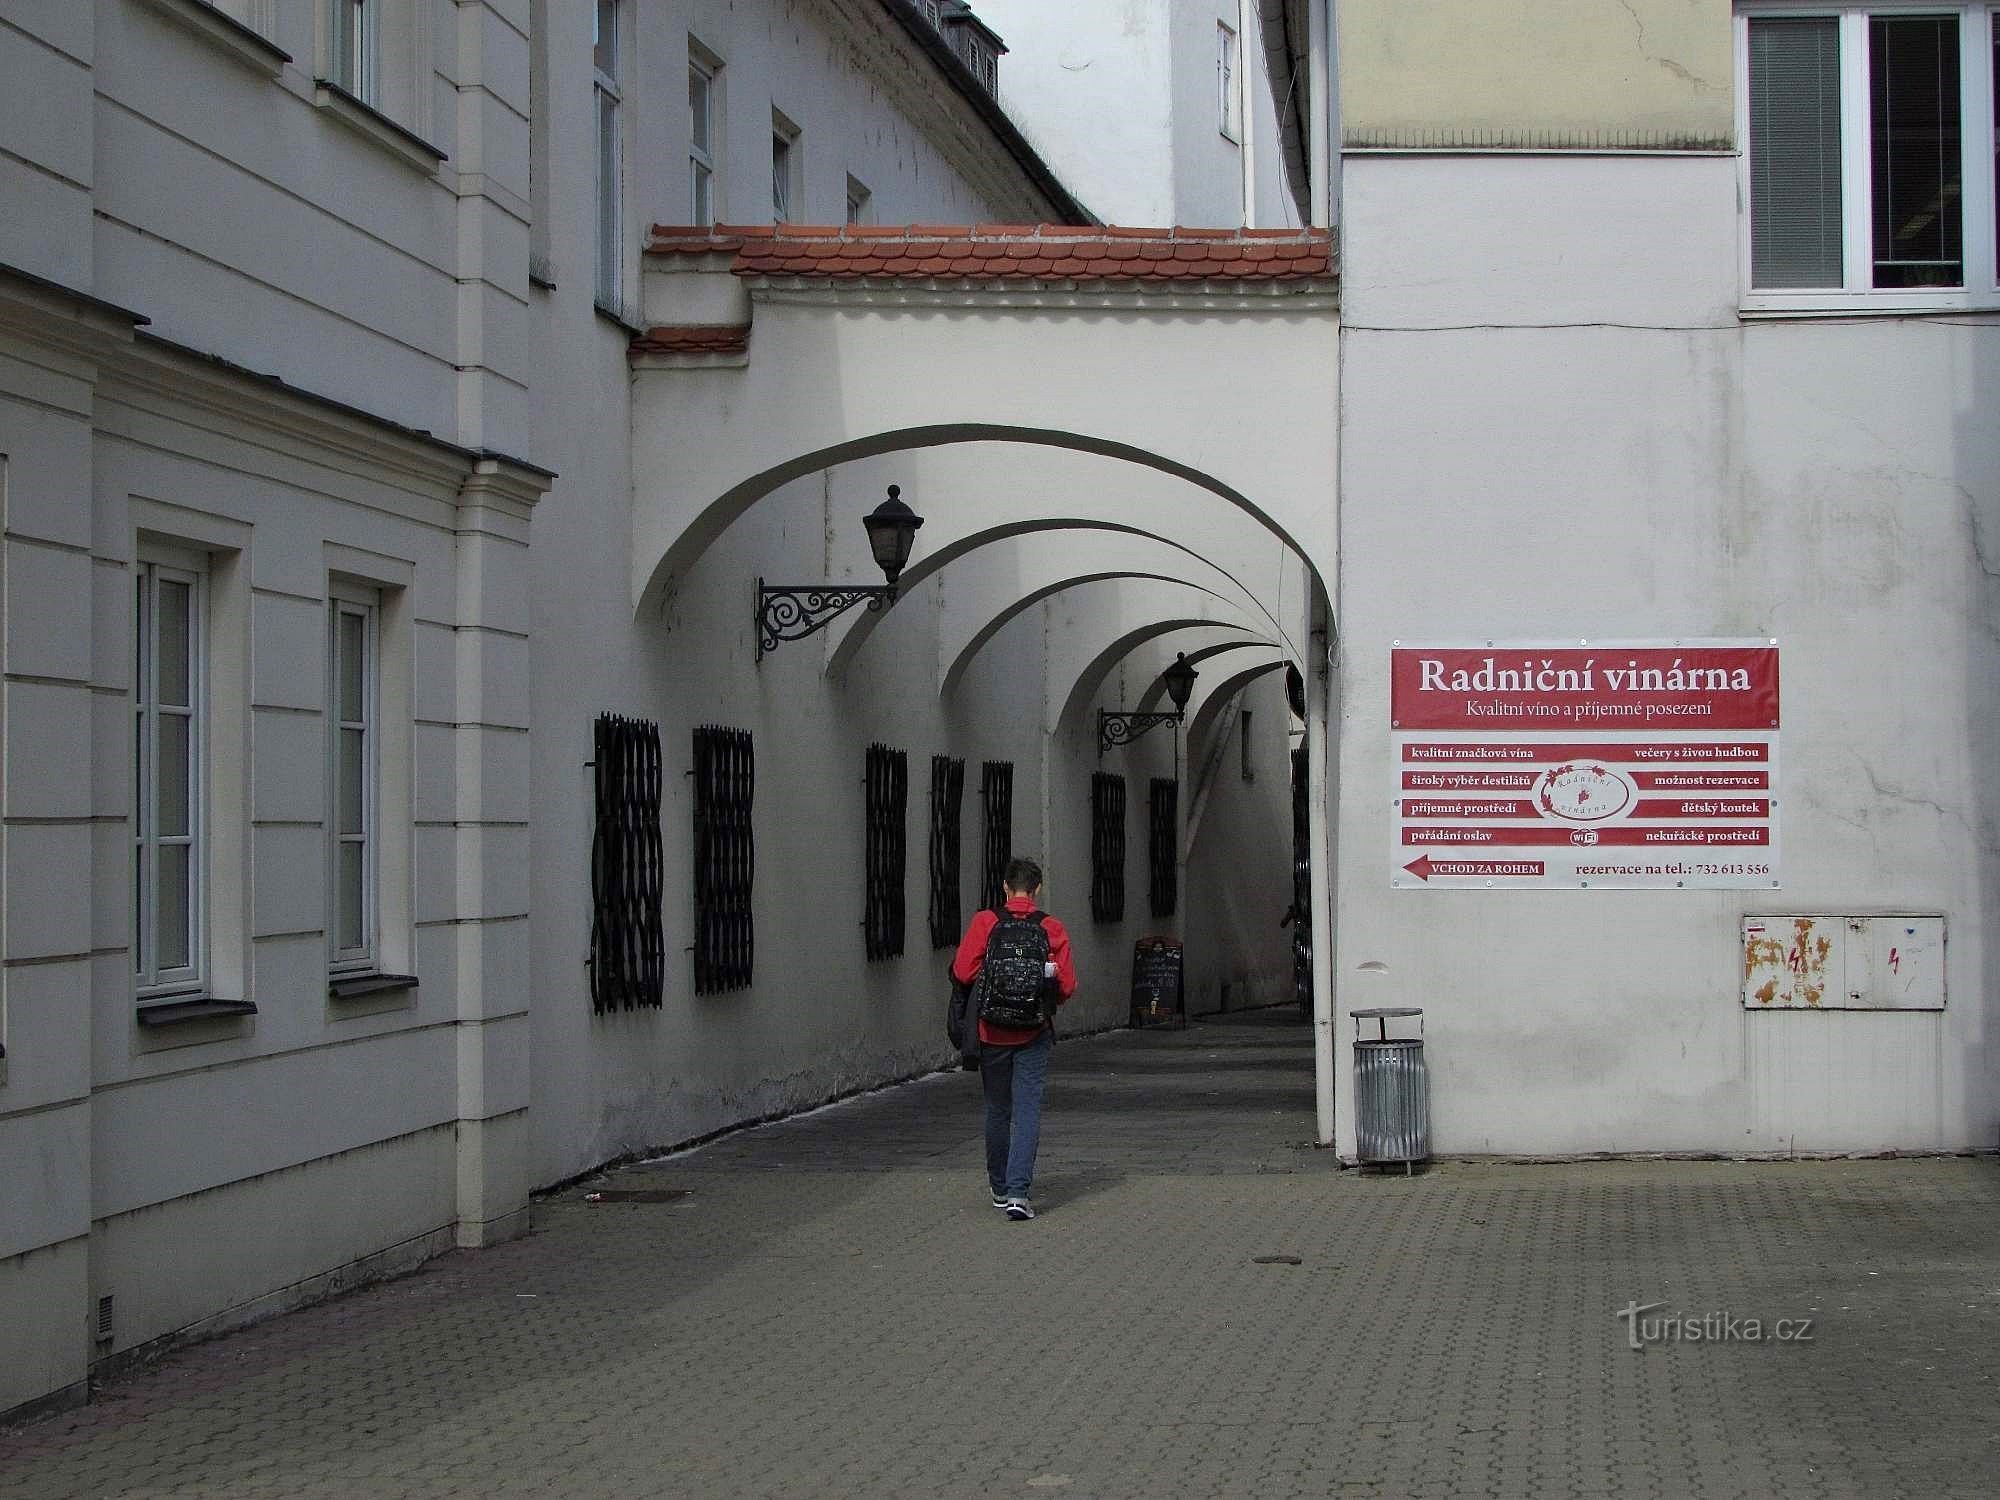 Οδός Radnická